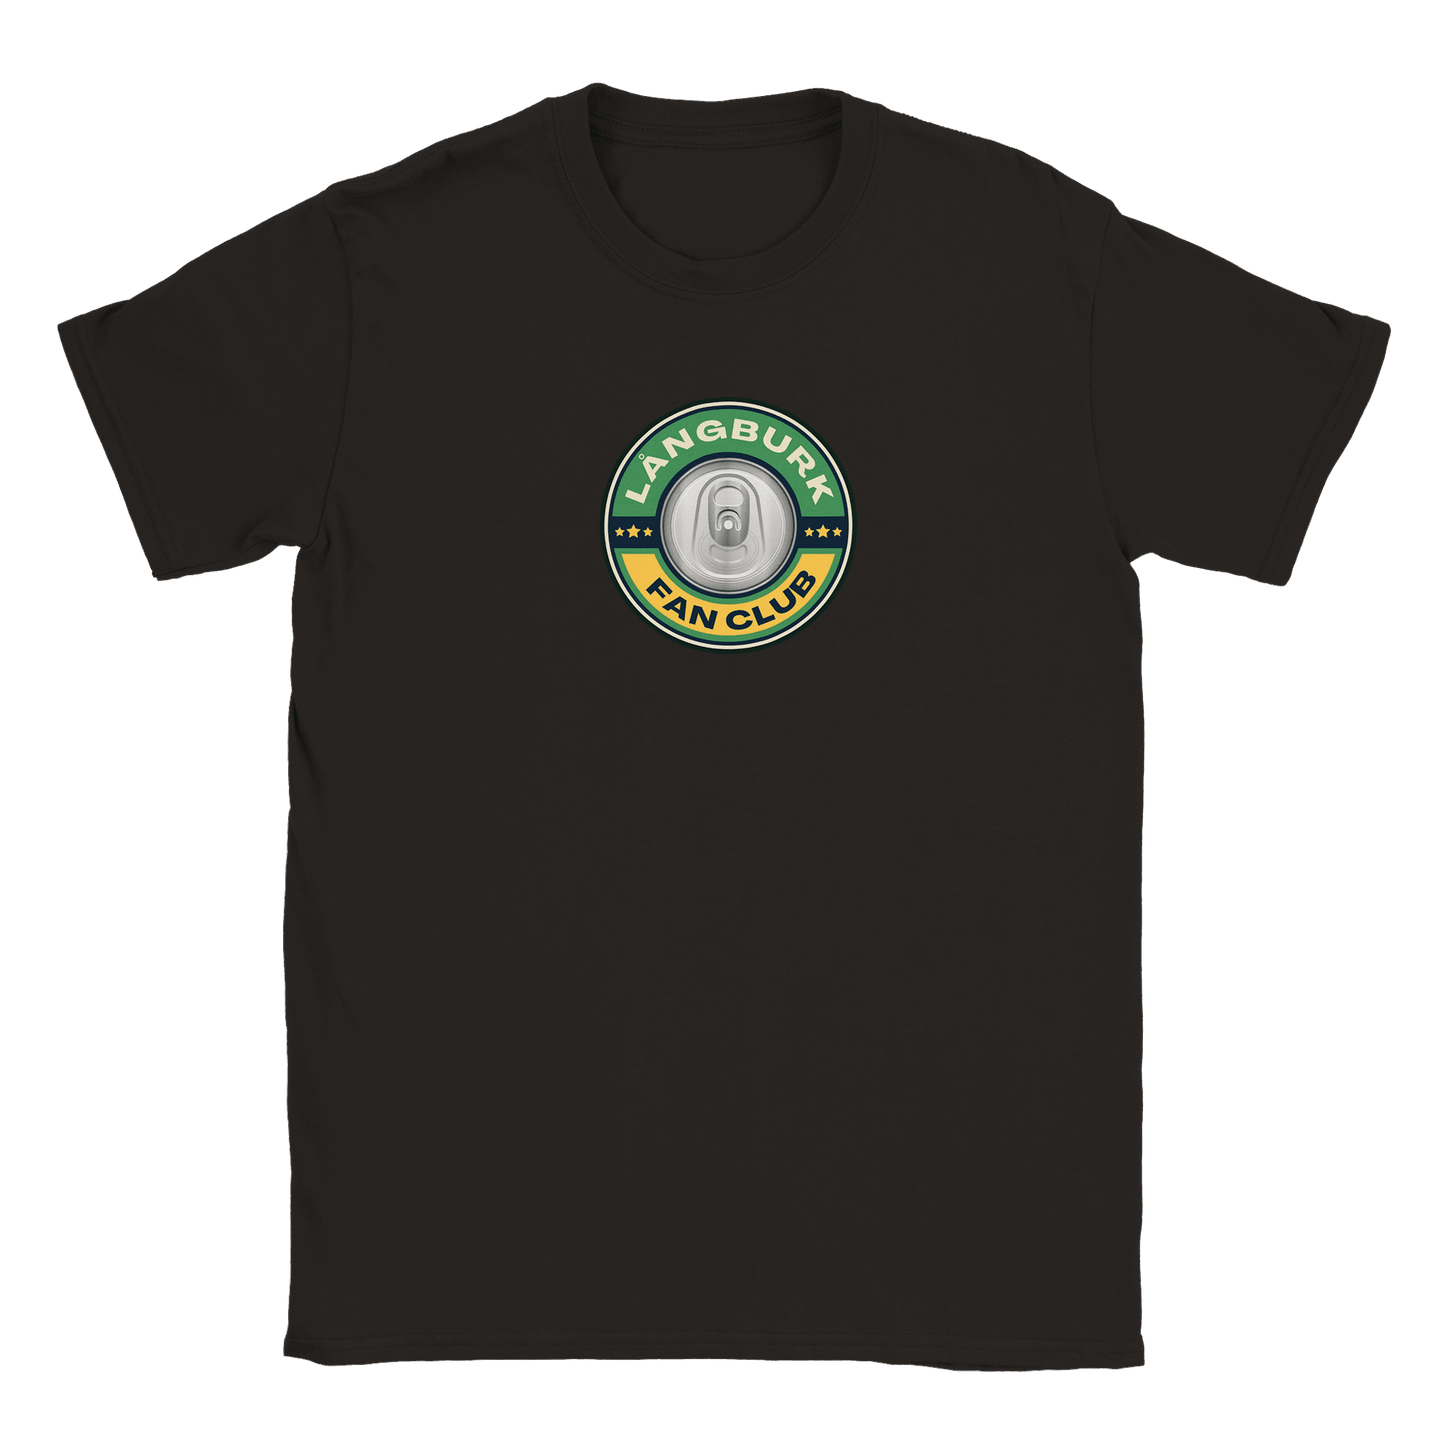 Långburk Fan Club - T-shirt Svart